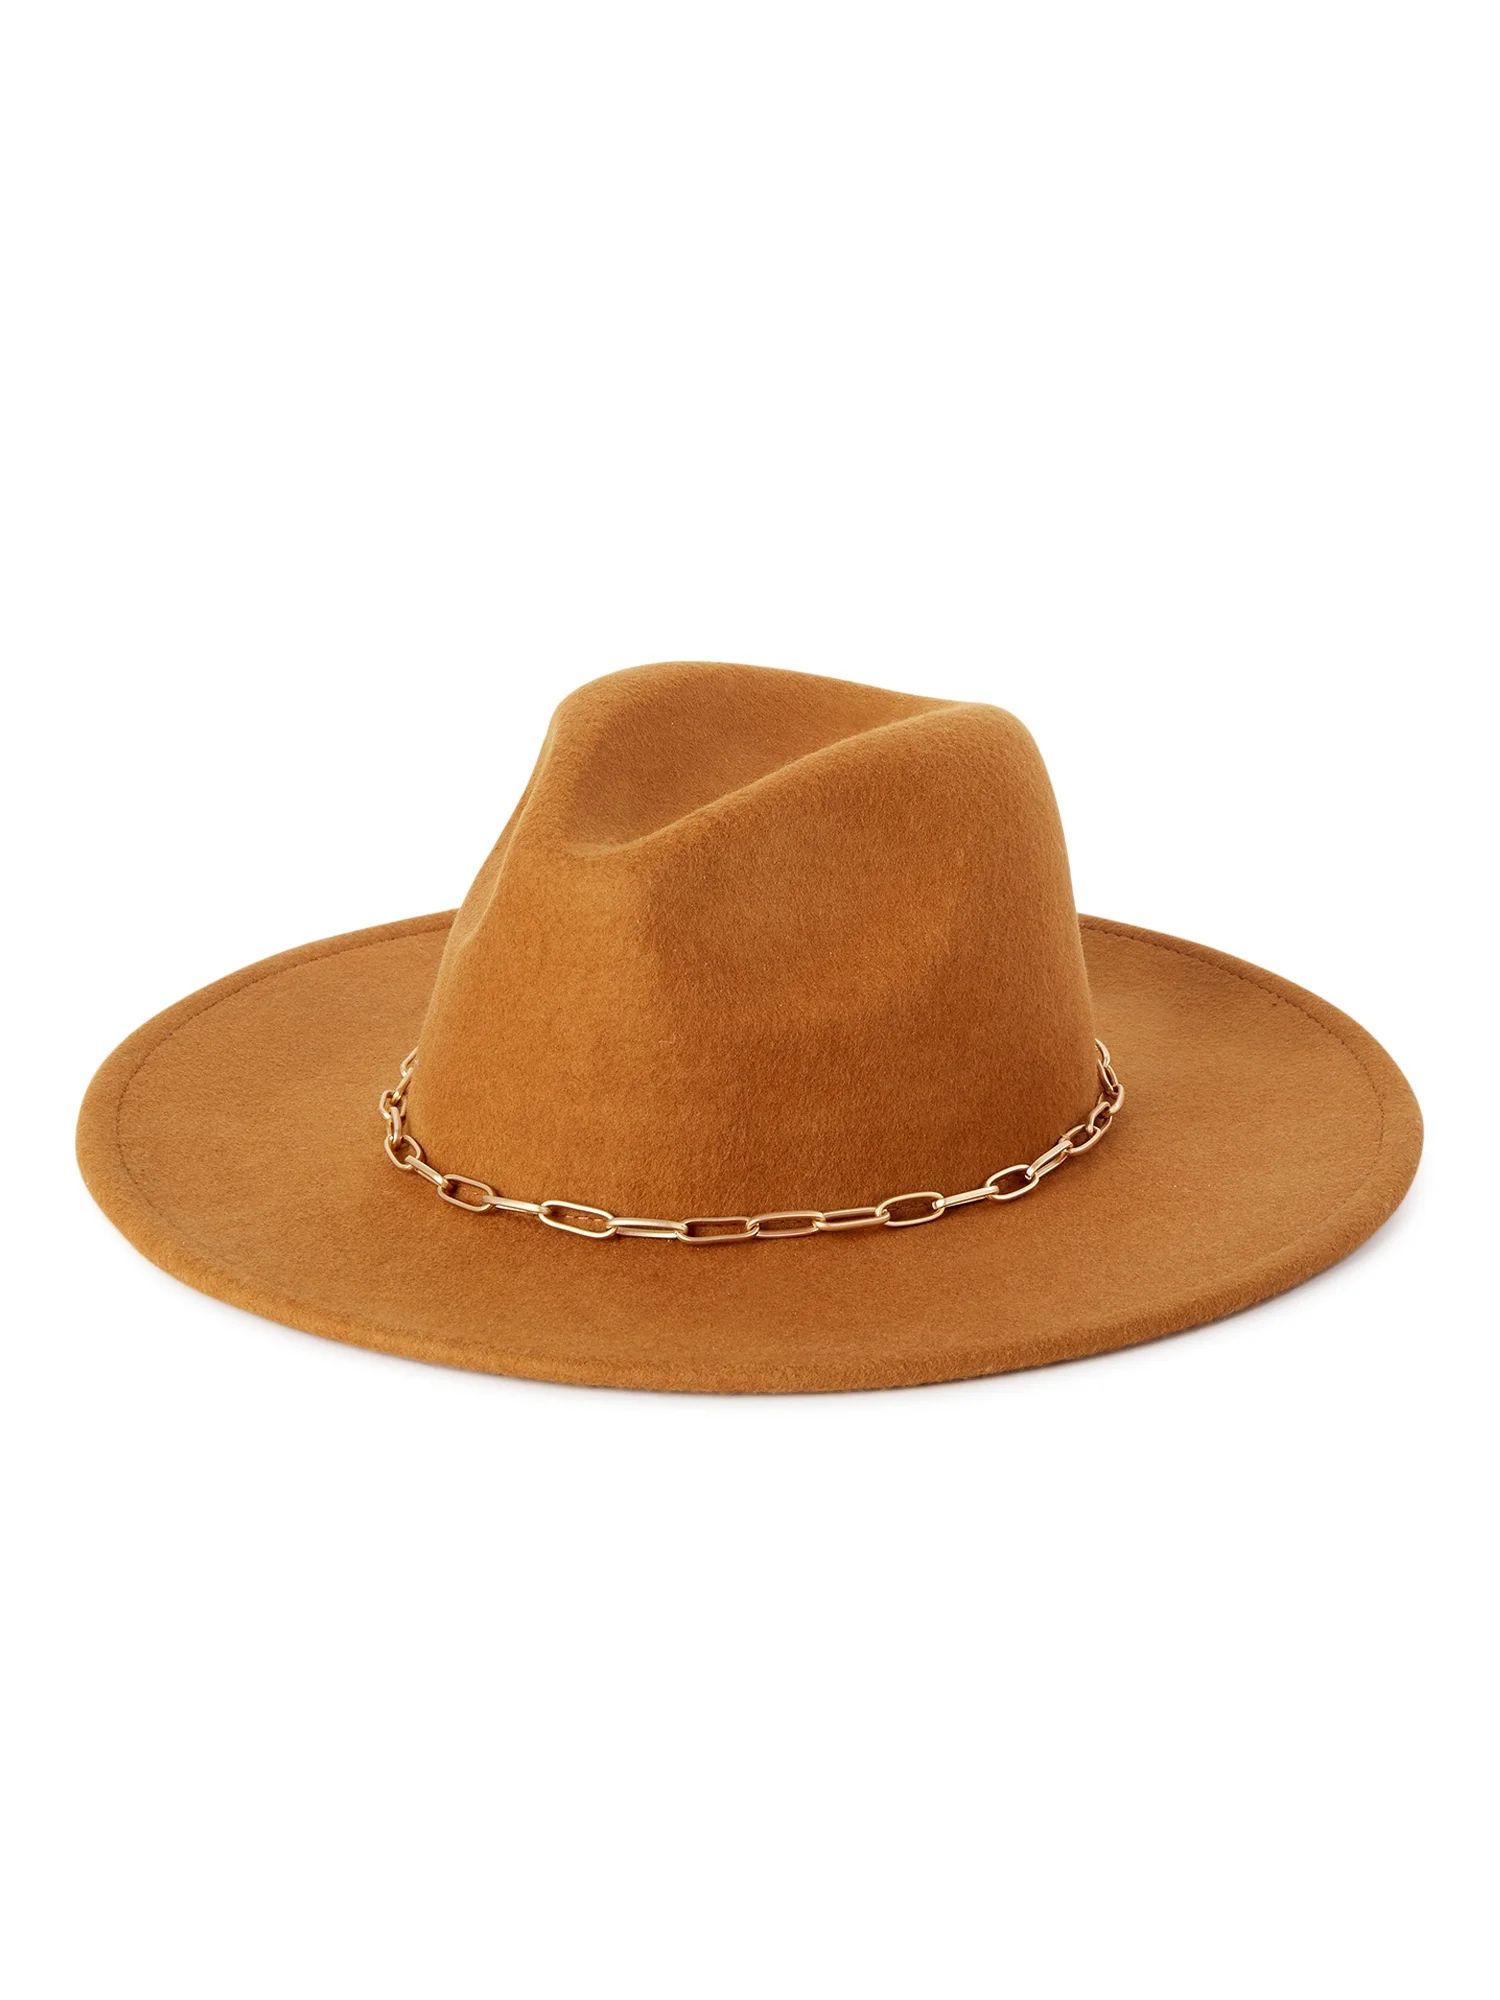 Scoop Adult Women's Brown Rancher Hat with Chain Trim - Walmart.com | Walmart (US)